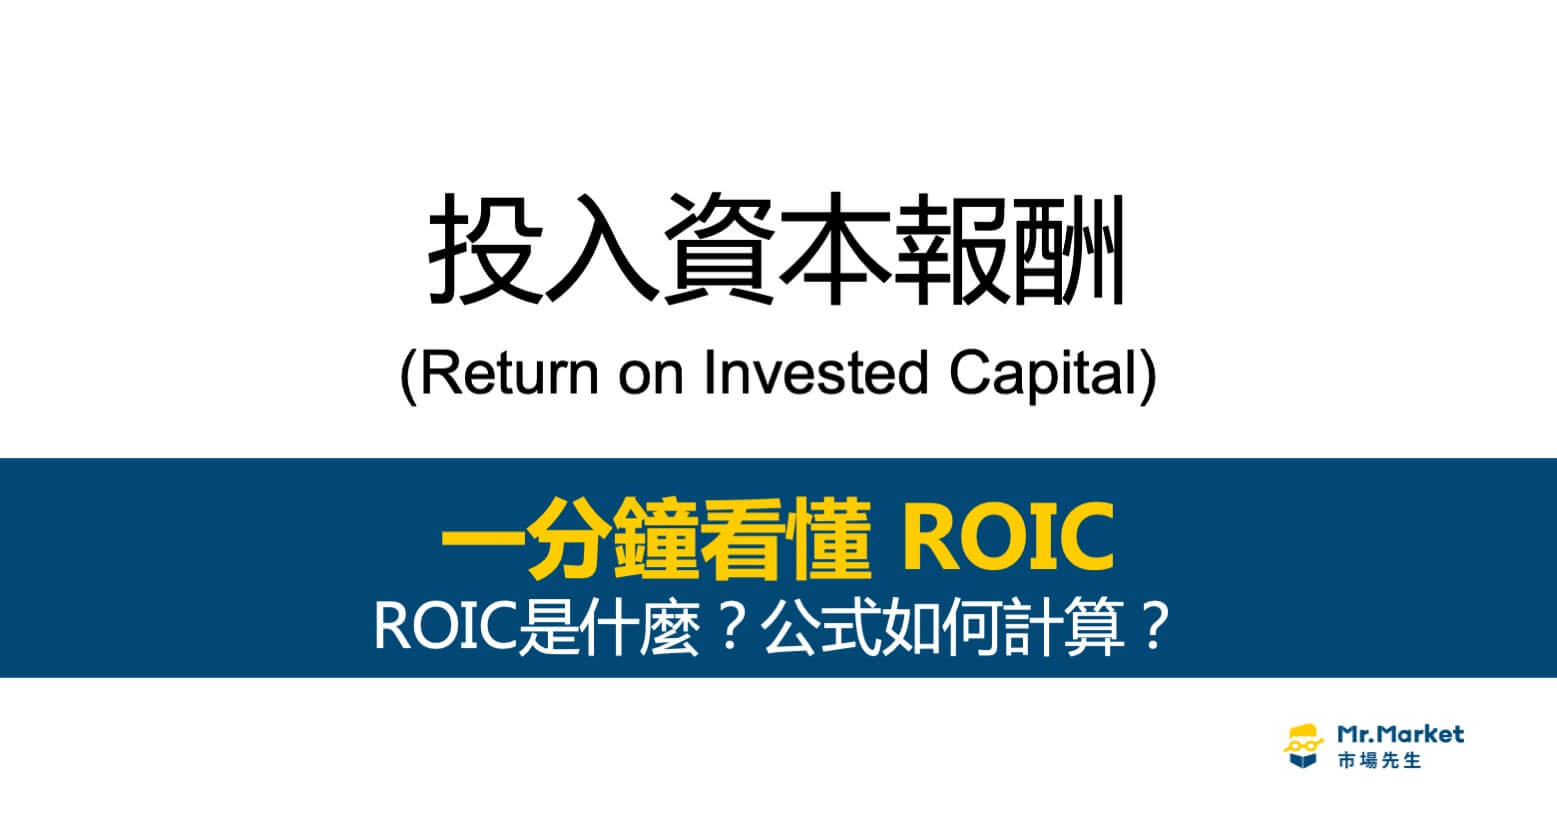 ROIC投入資本報酬是什麼？公式如何計算？